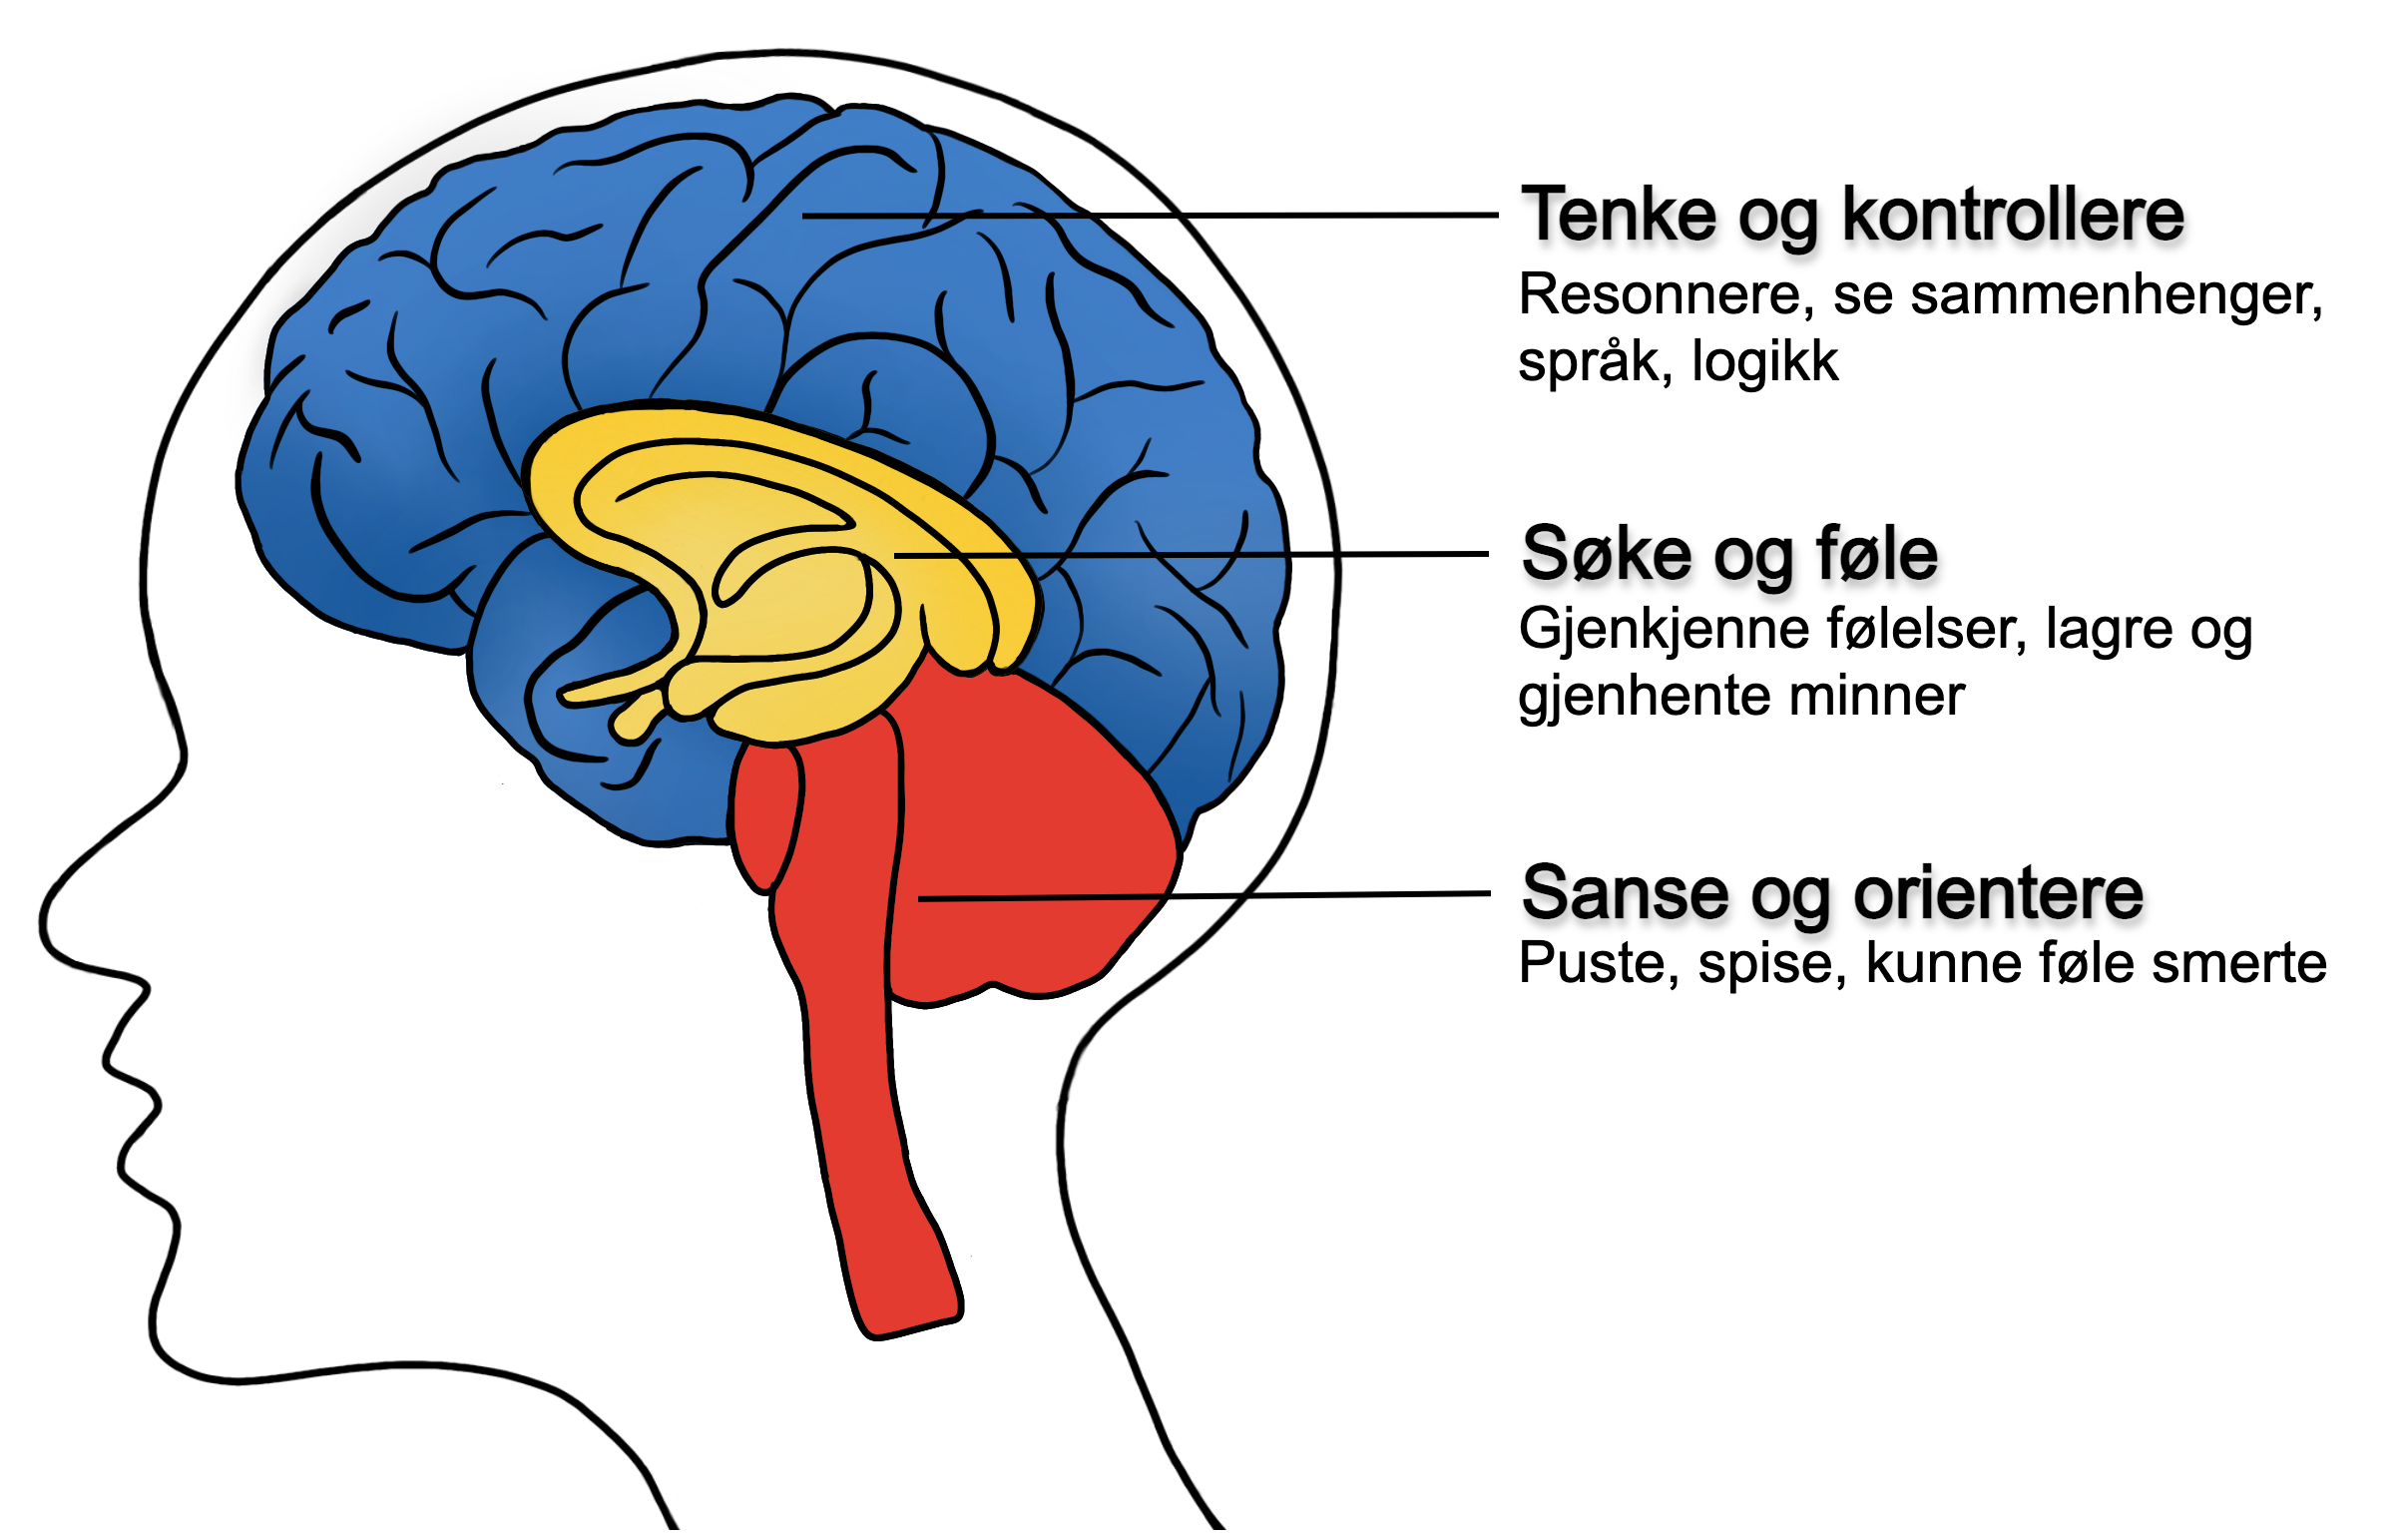 Illustrasjon av den tredelte hjernen. Øverst: "tenke og kontrollere", deretter "søke og føle", og til sist: "sanse og orientere".